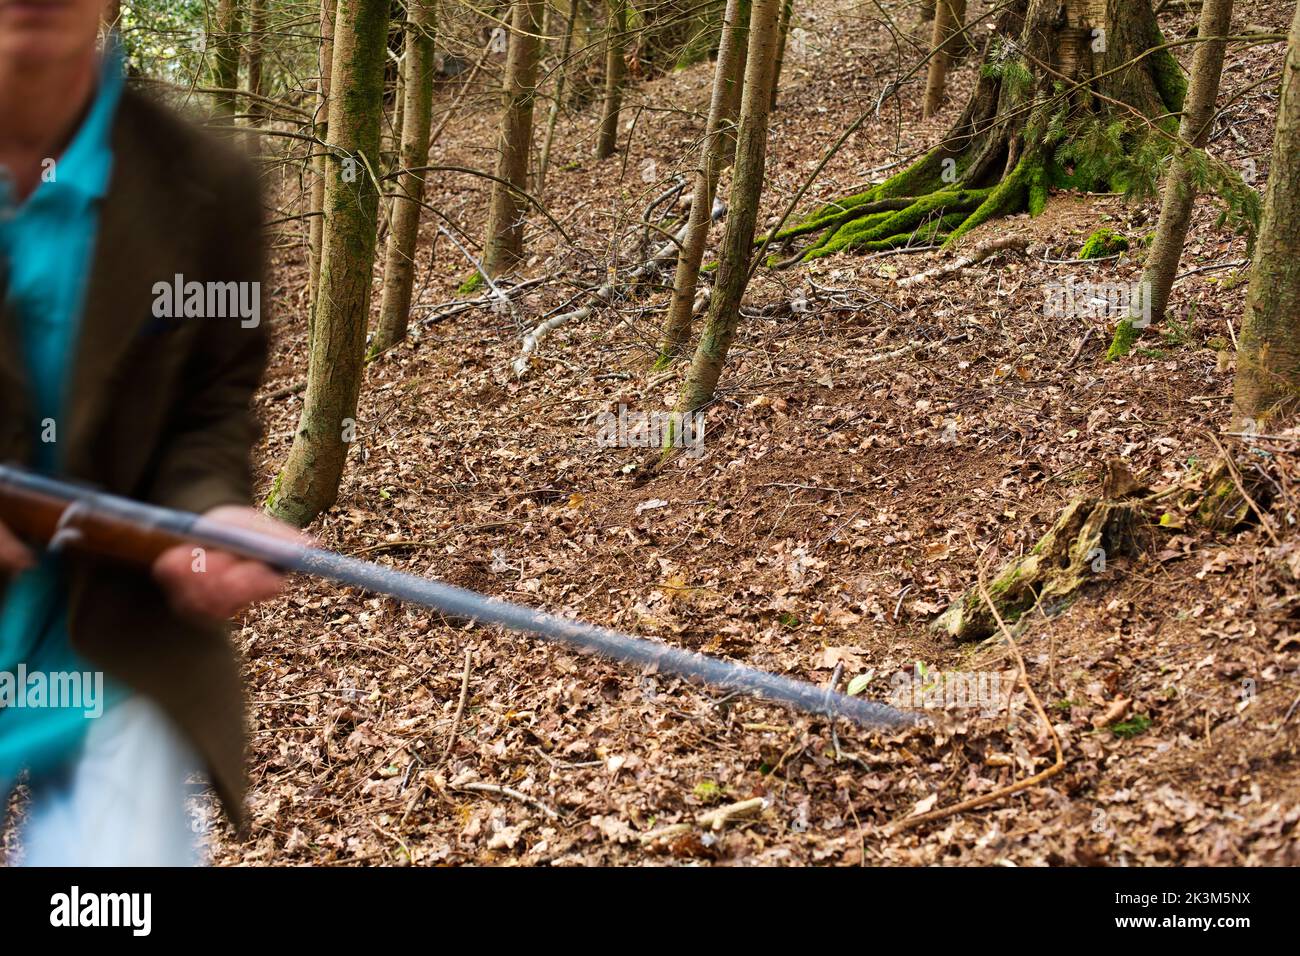 Une image de blury d'un homme qui marche à travers les bois a un fusil Banque D'Images